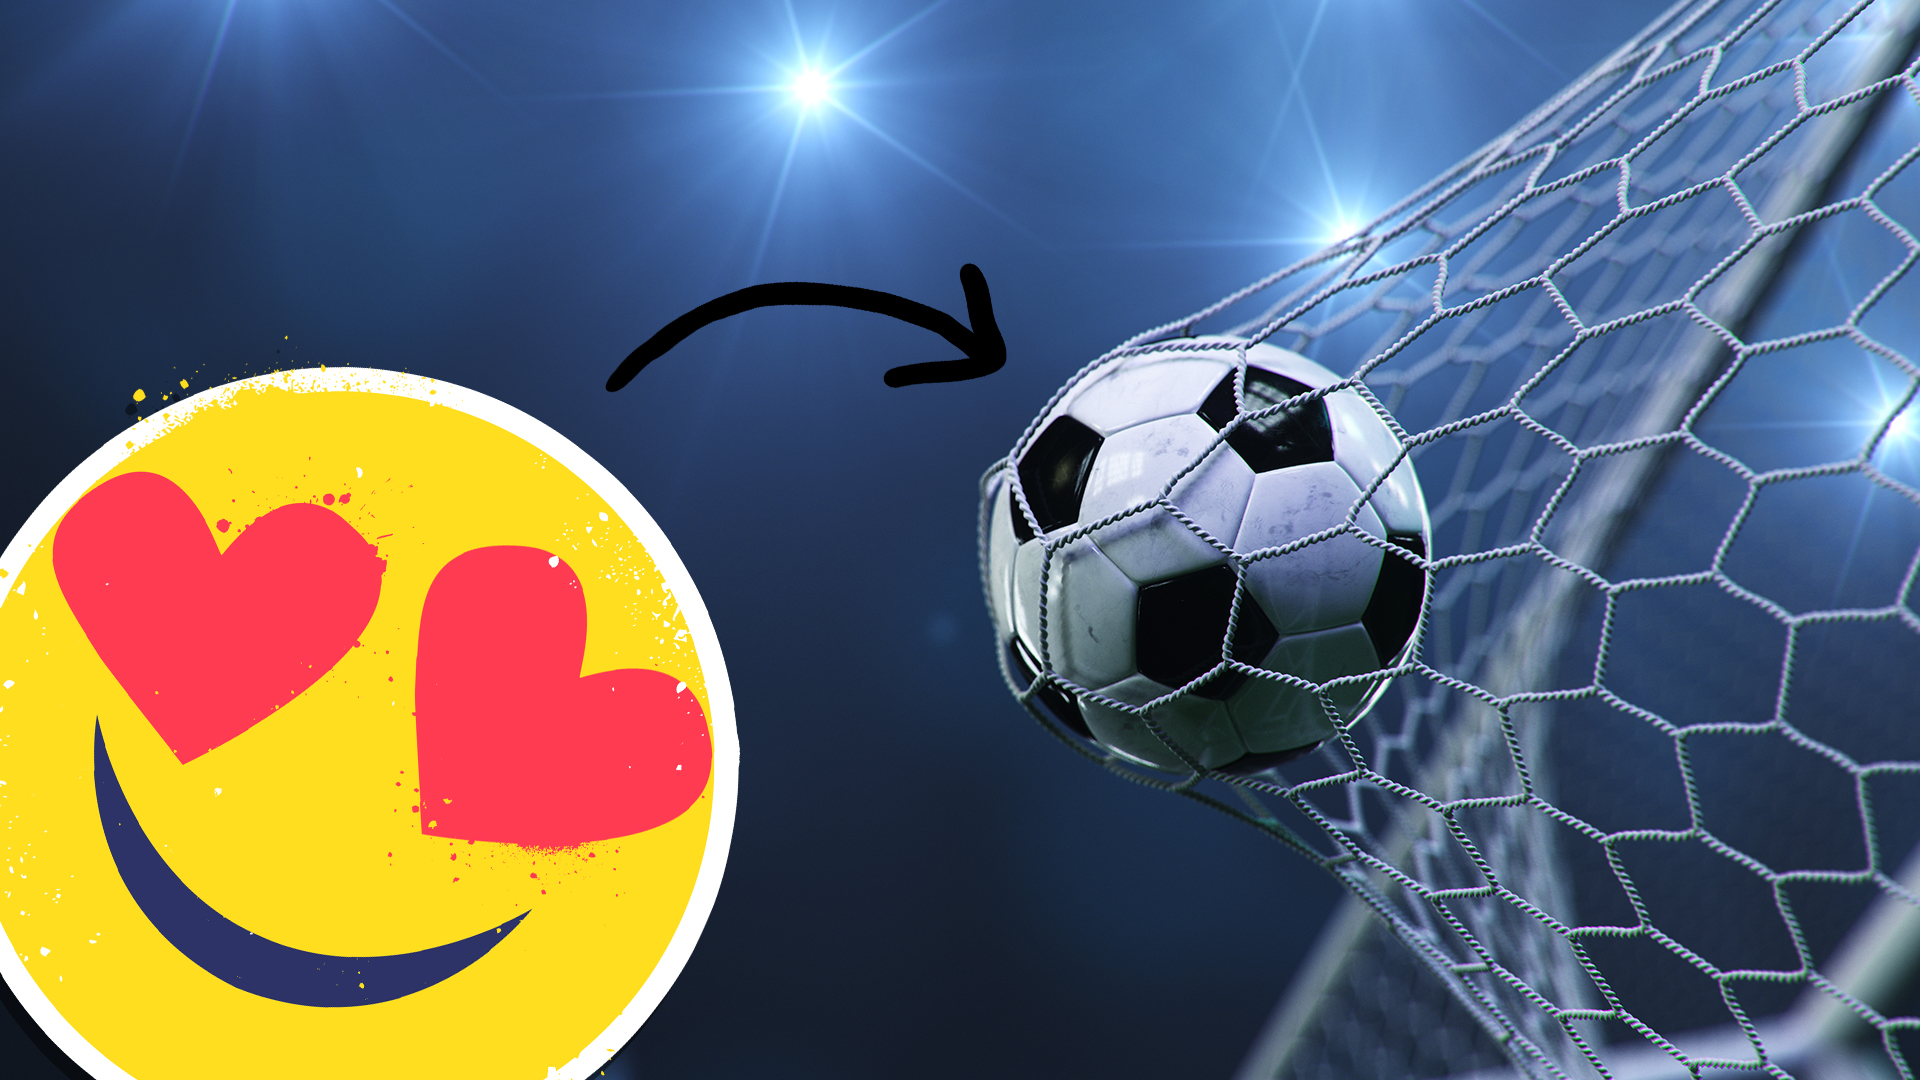 A goal and love heart emoji